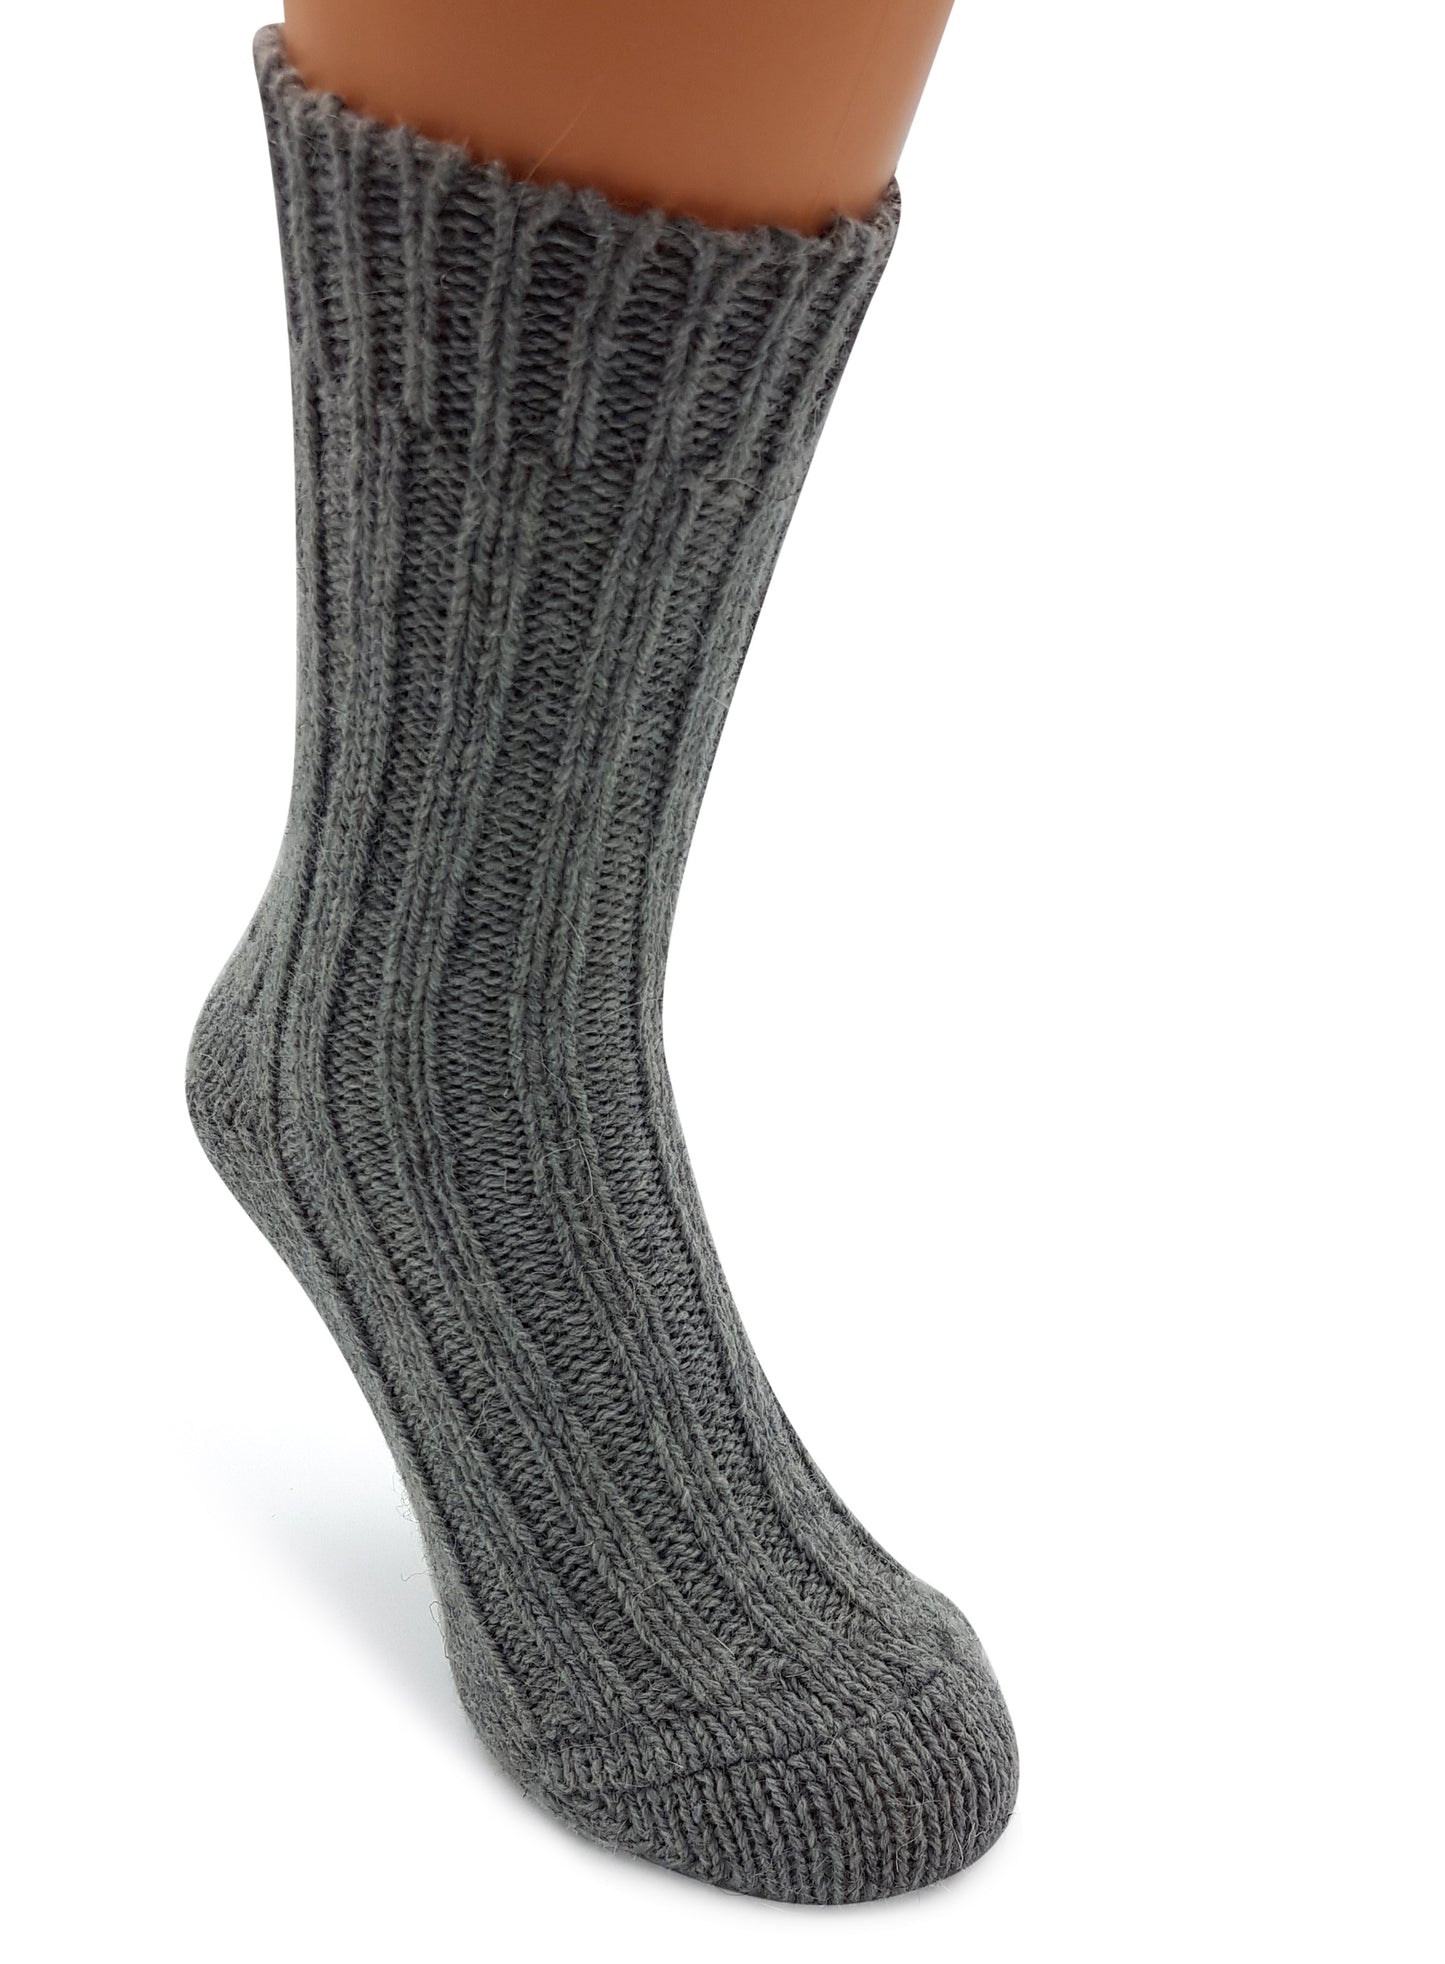 Alpaka Socken, Wollsocken (2 Paar) - Strick (Grau/Dunkelgrau)